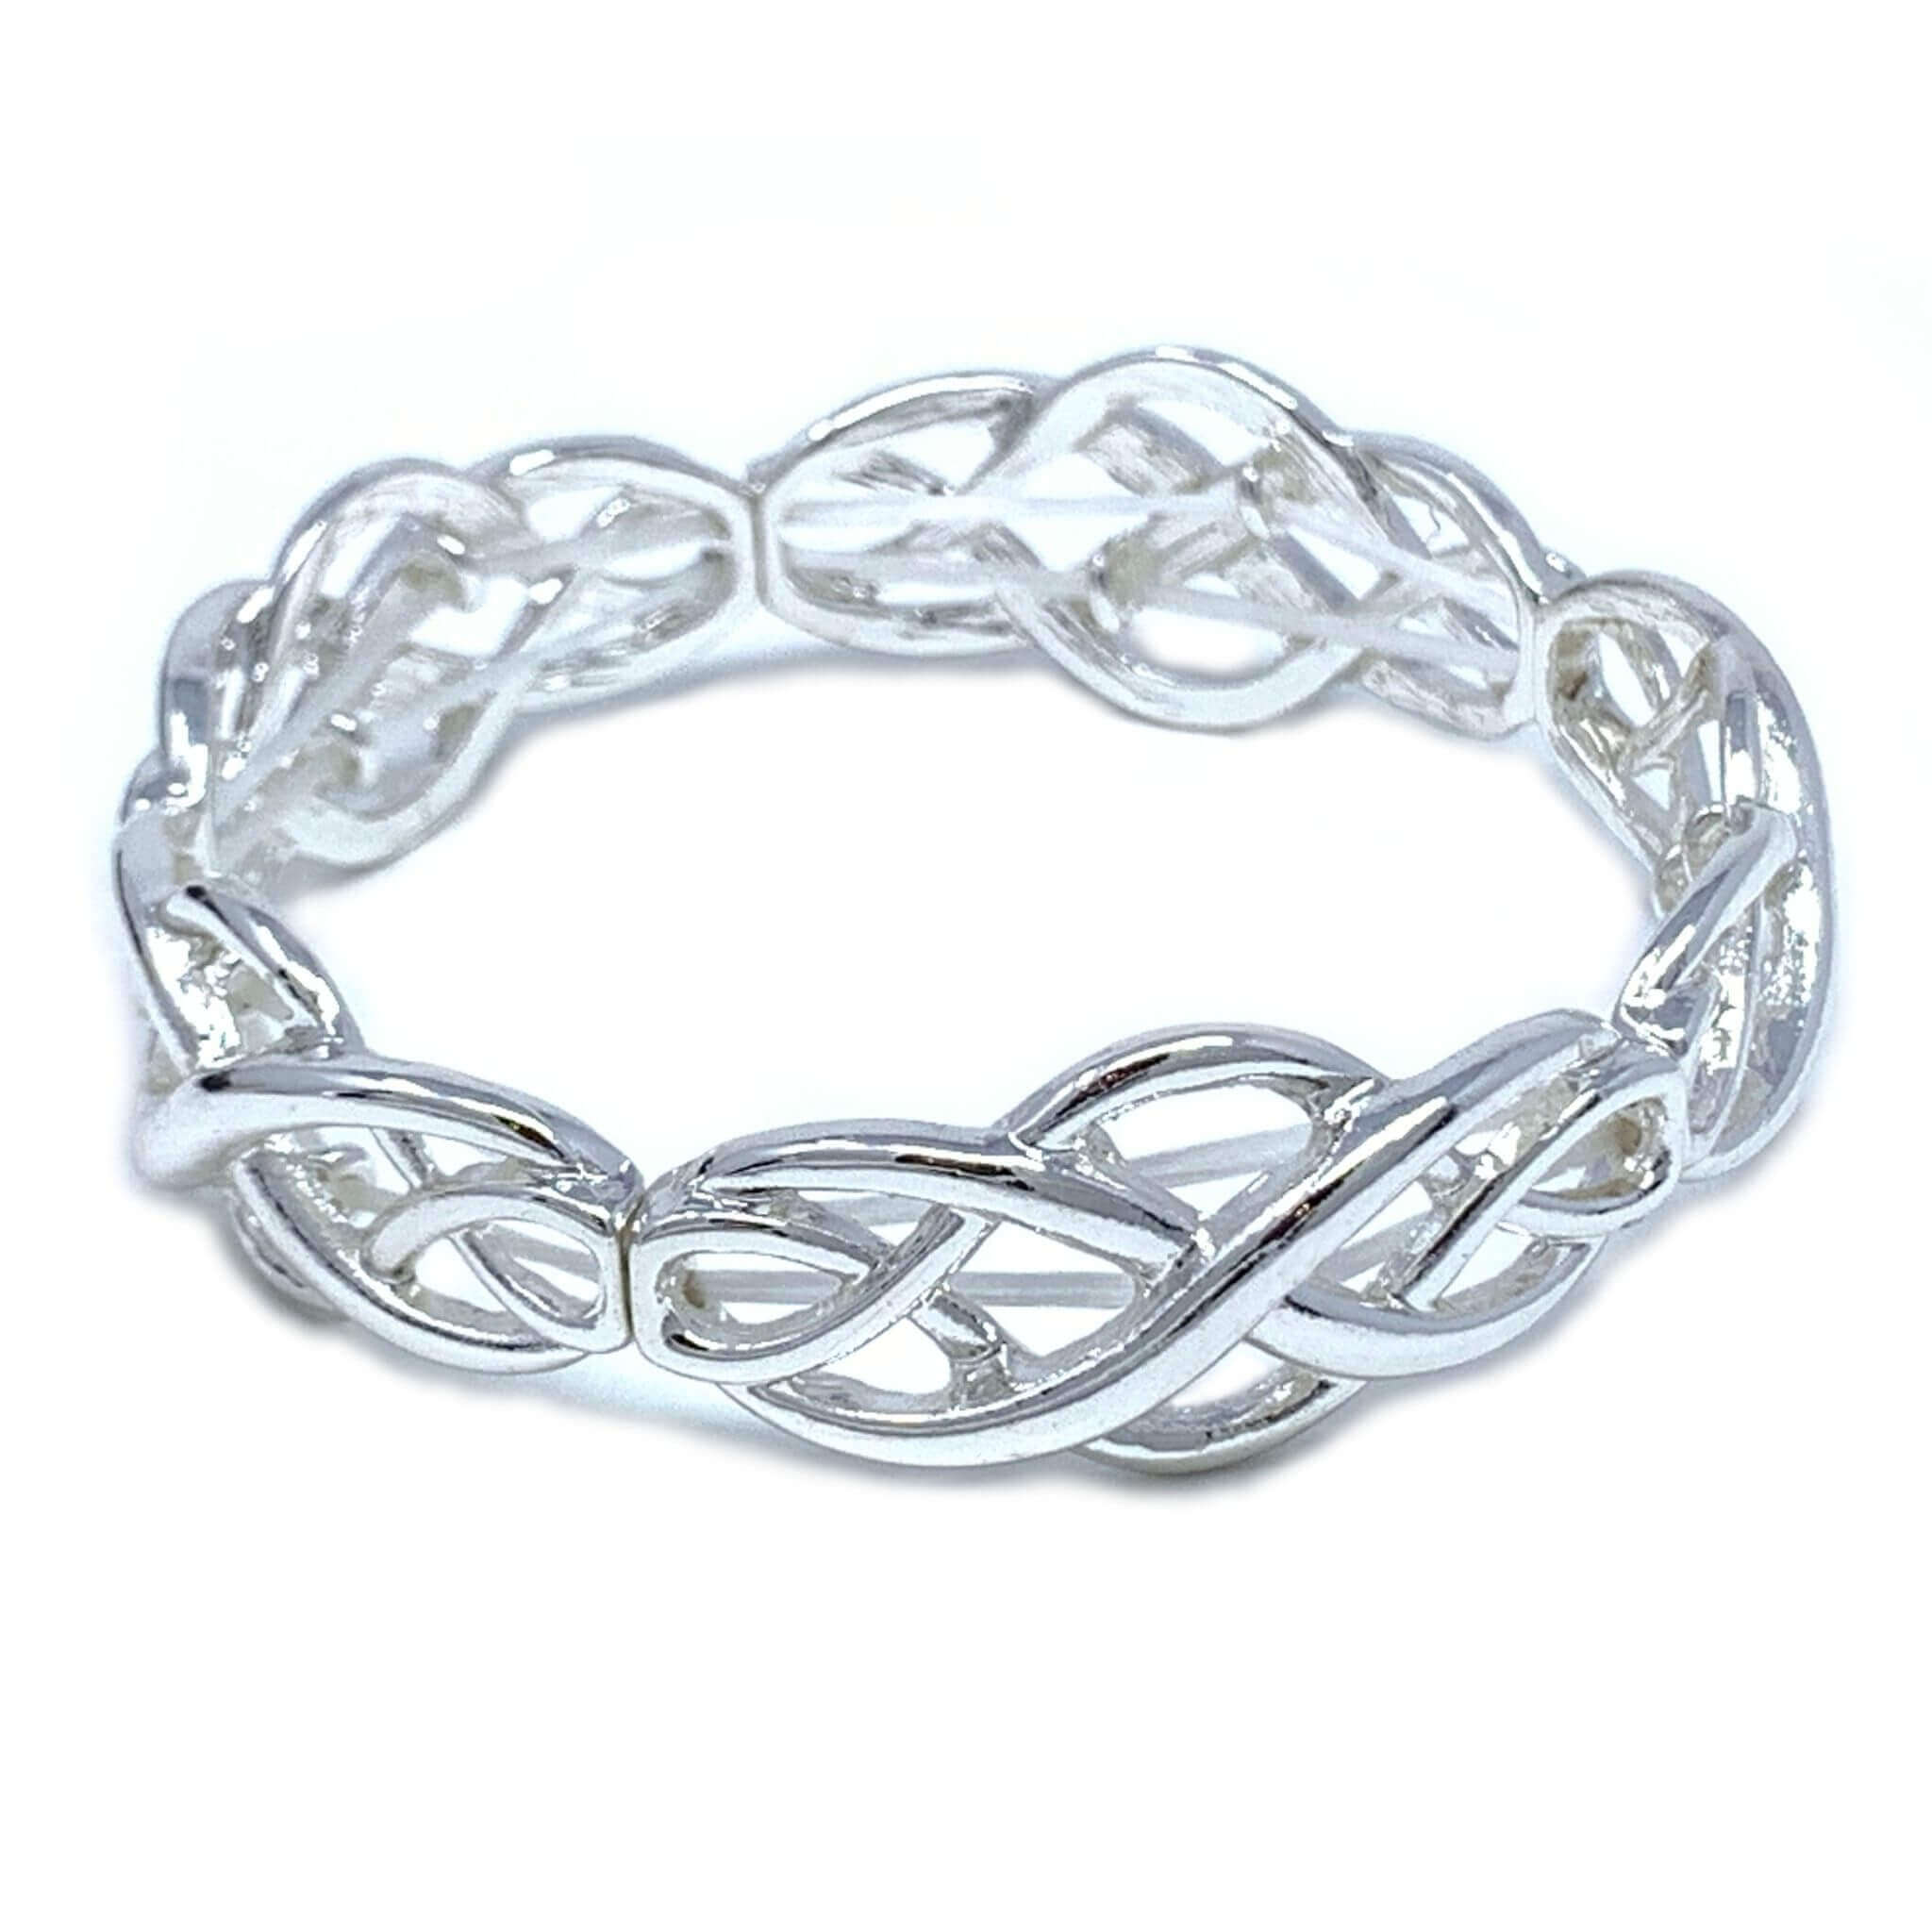 Askernish Silver Celtic Bangle - Hebridean Jewellery